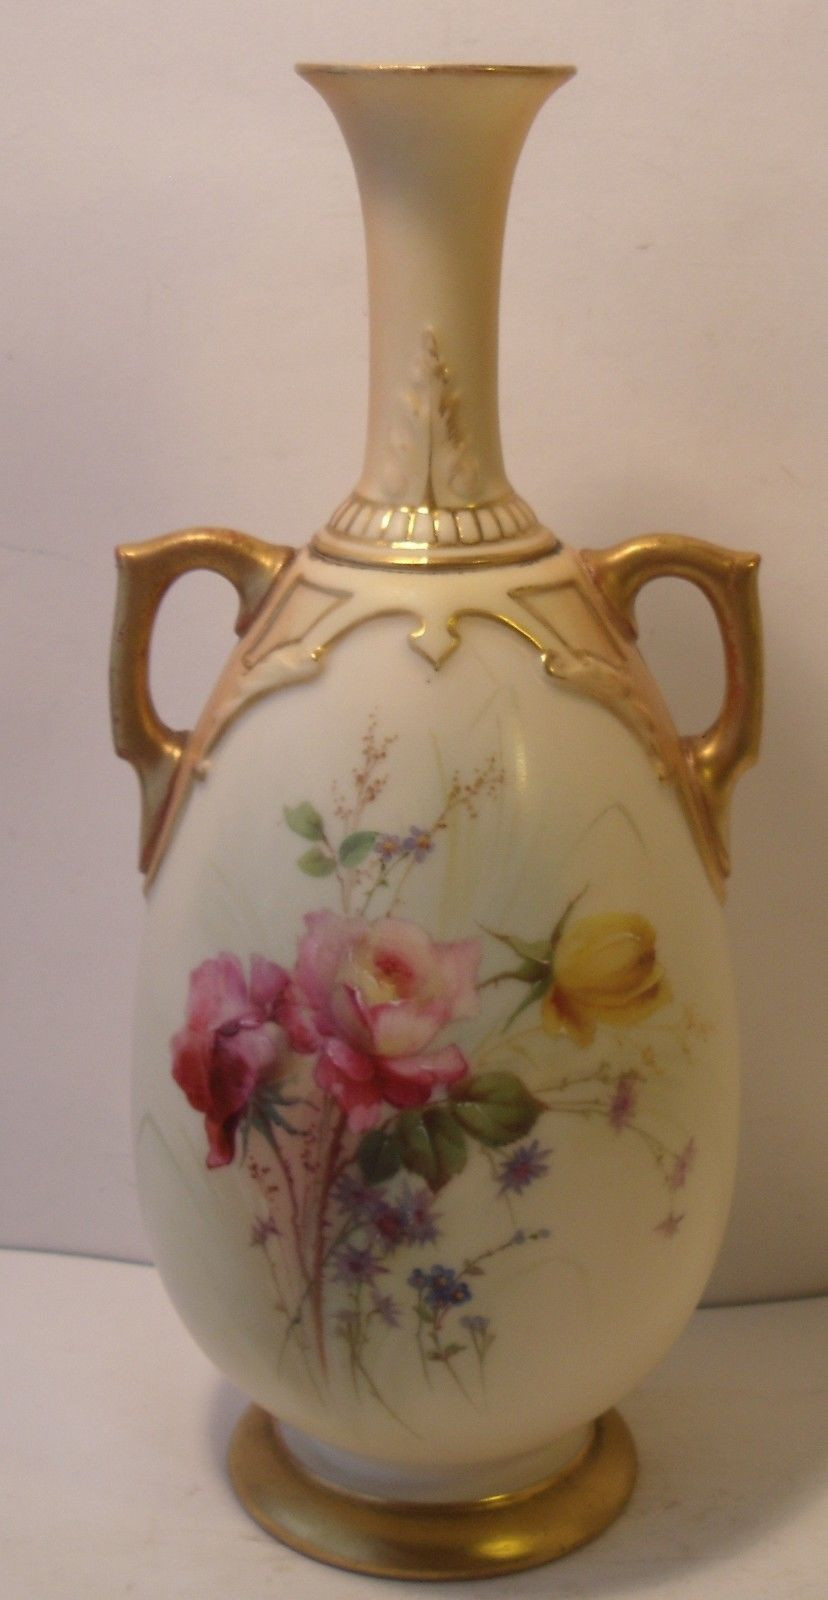 13 Ideal Jpl France Vase 2024 free download jpl france vase of stunning 8 royal worcester blush ivory twin handled vase 1762 pertaining to stunning 8 royal worcester blush ivory twin handled vase 1762